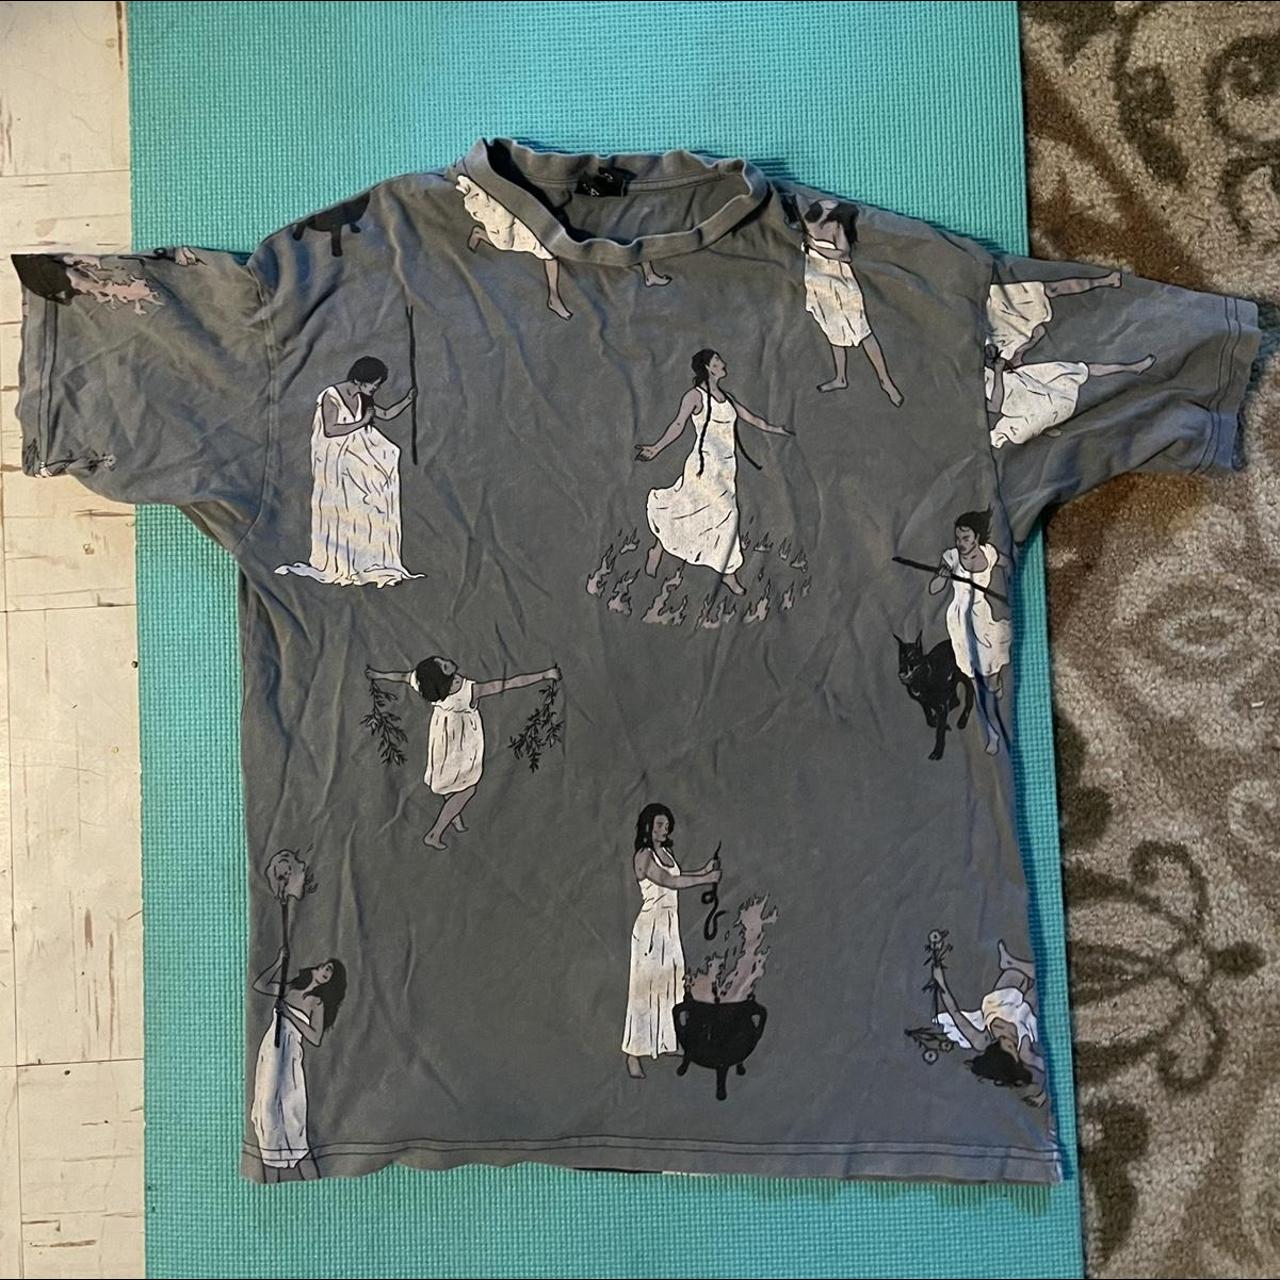 Dropdead Women's T-shirt (4)